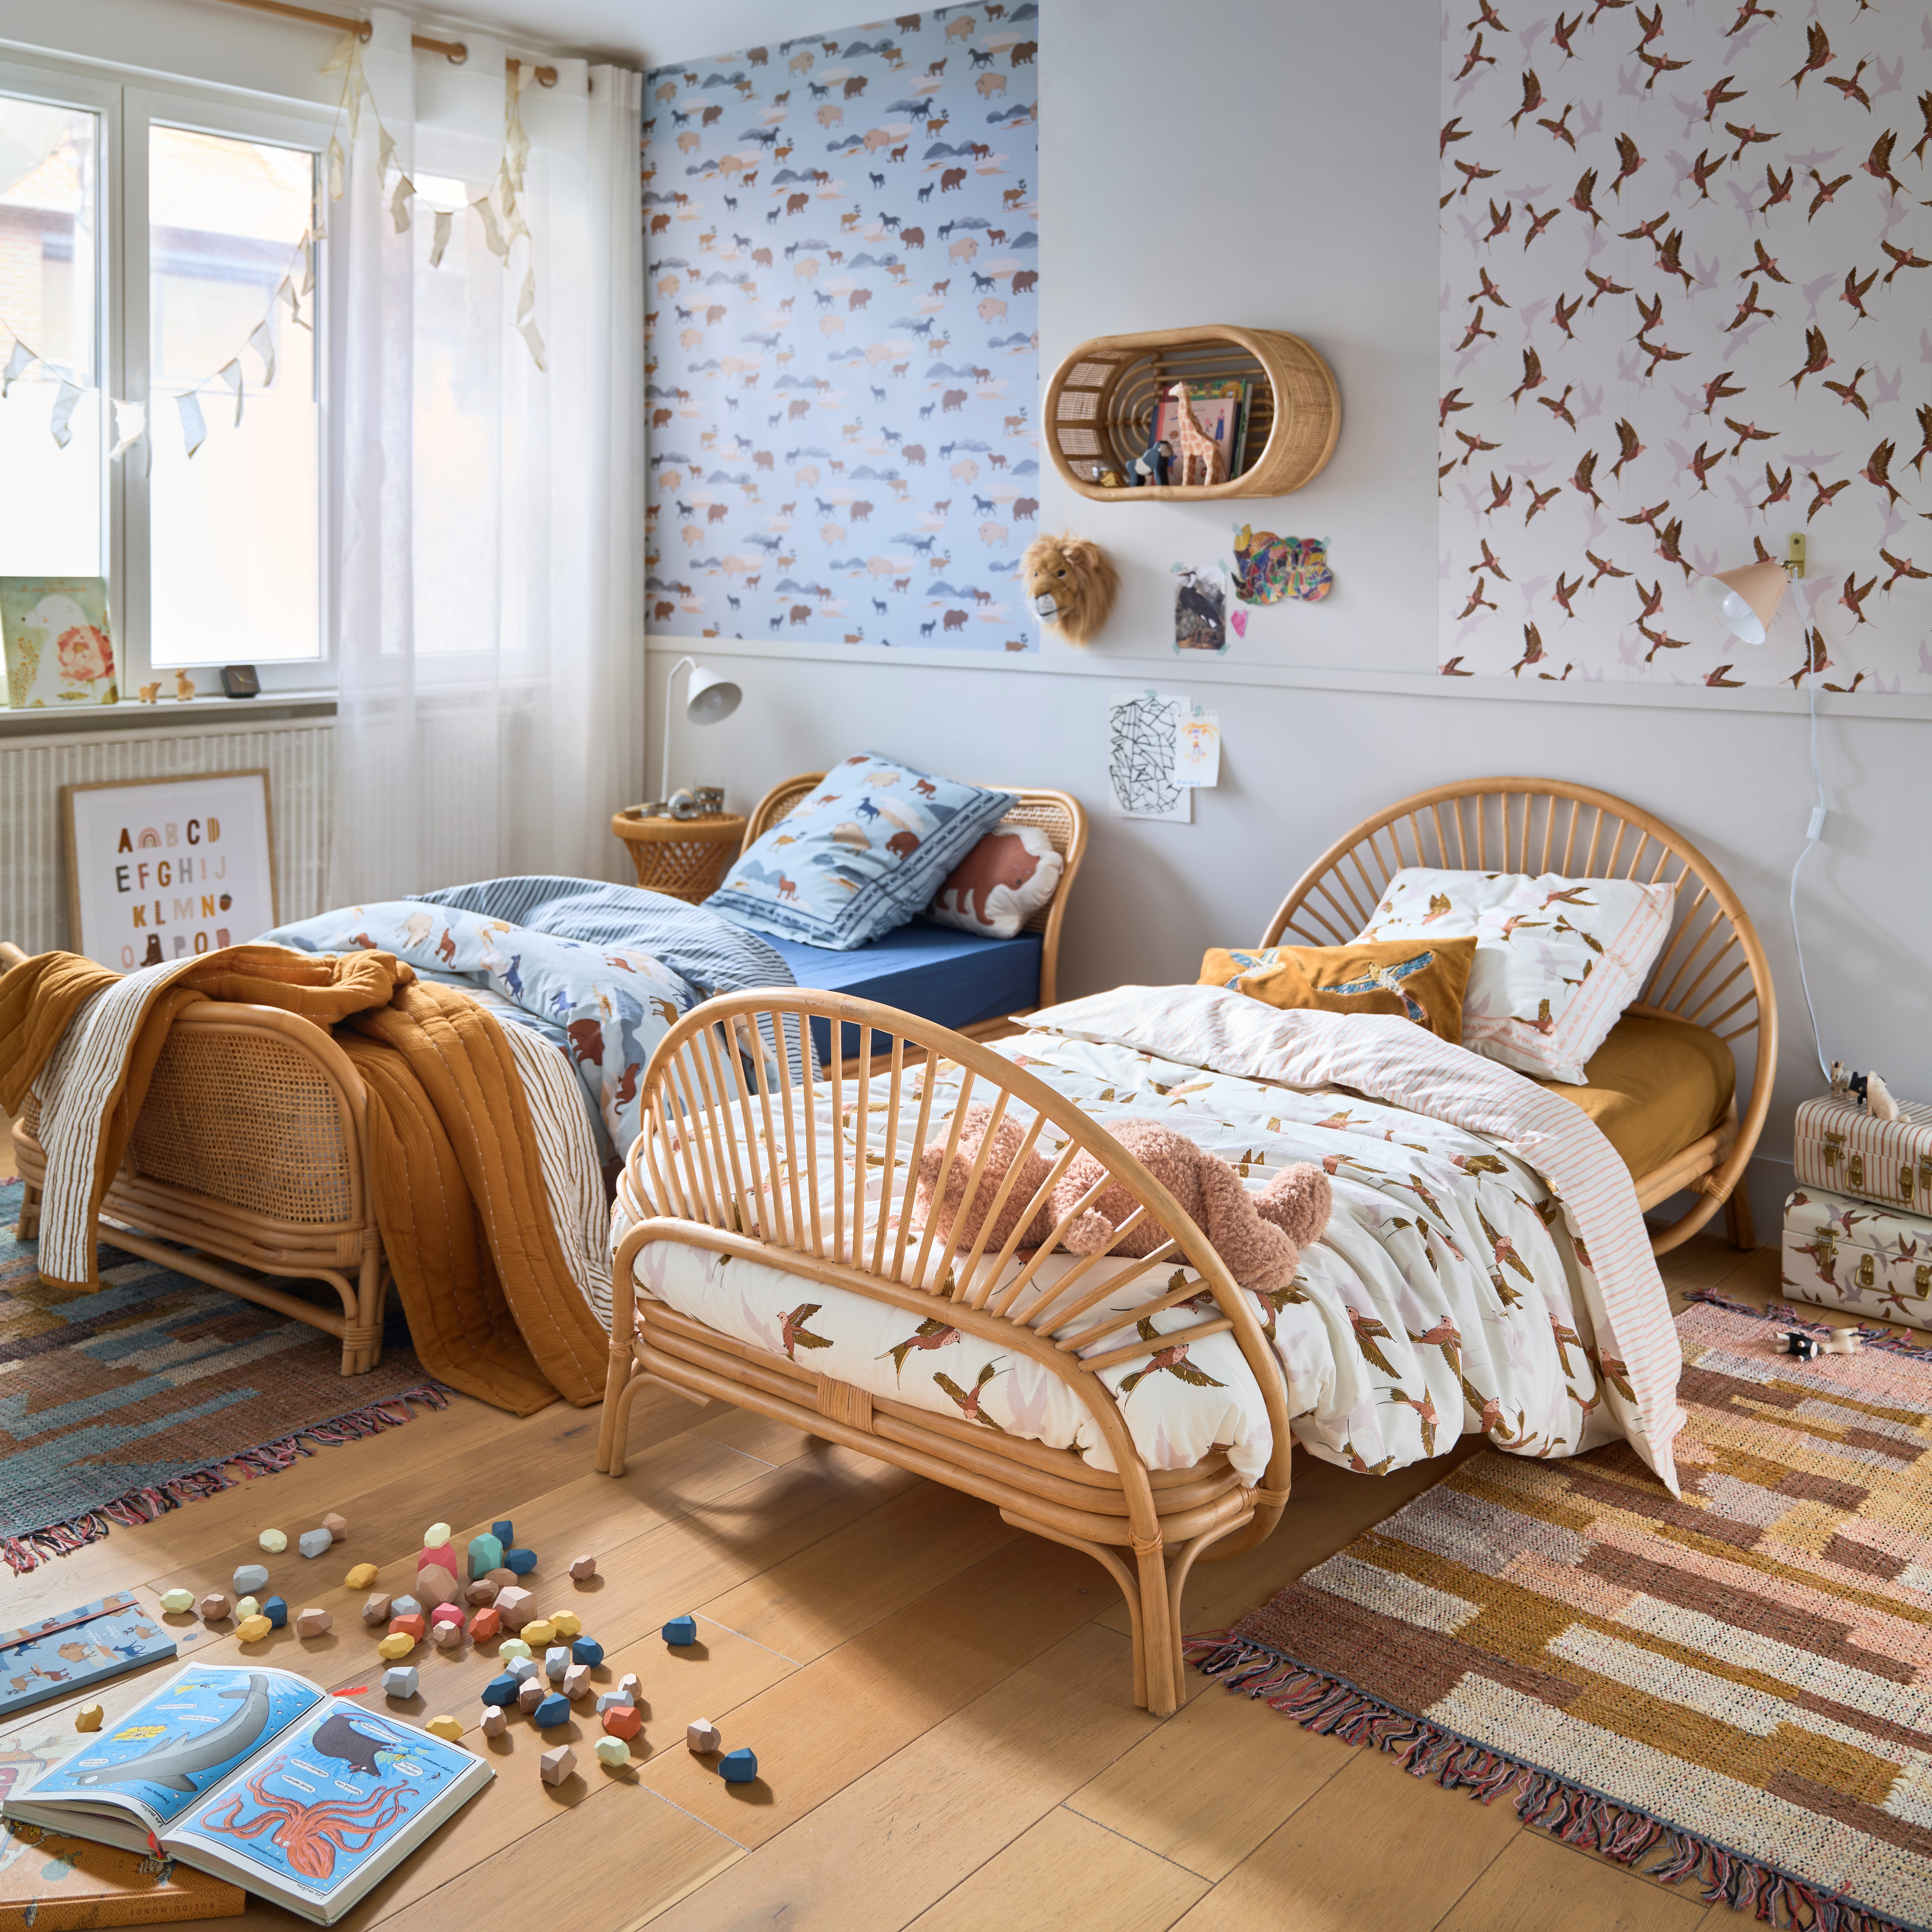 Aménagement chambre enfant : astuces pour espace agréable 